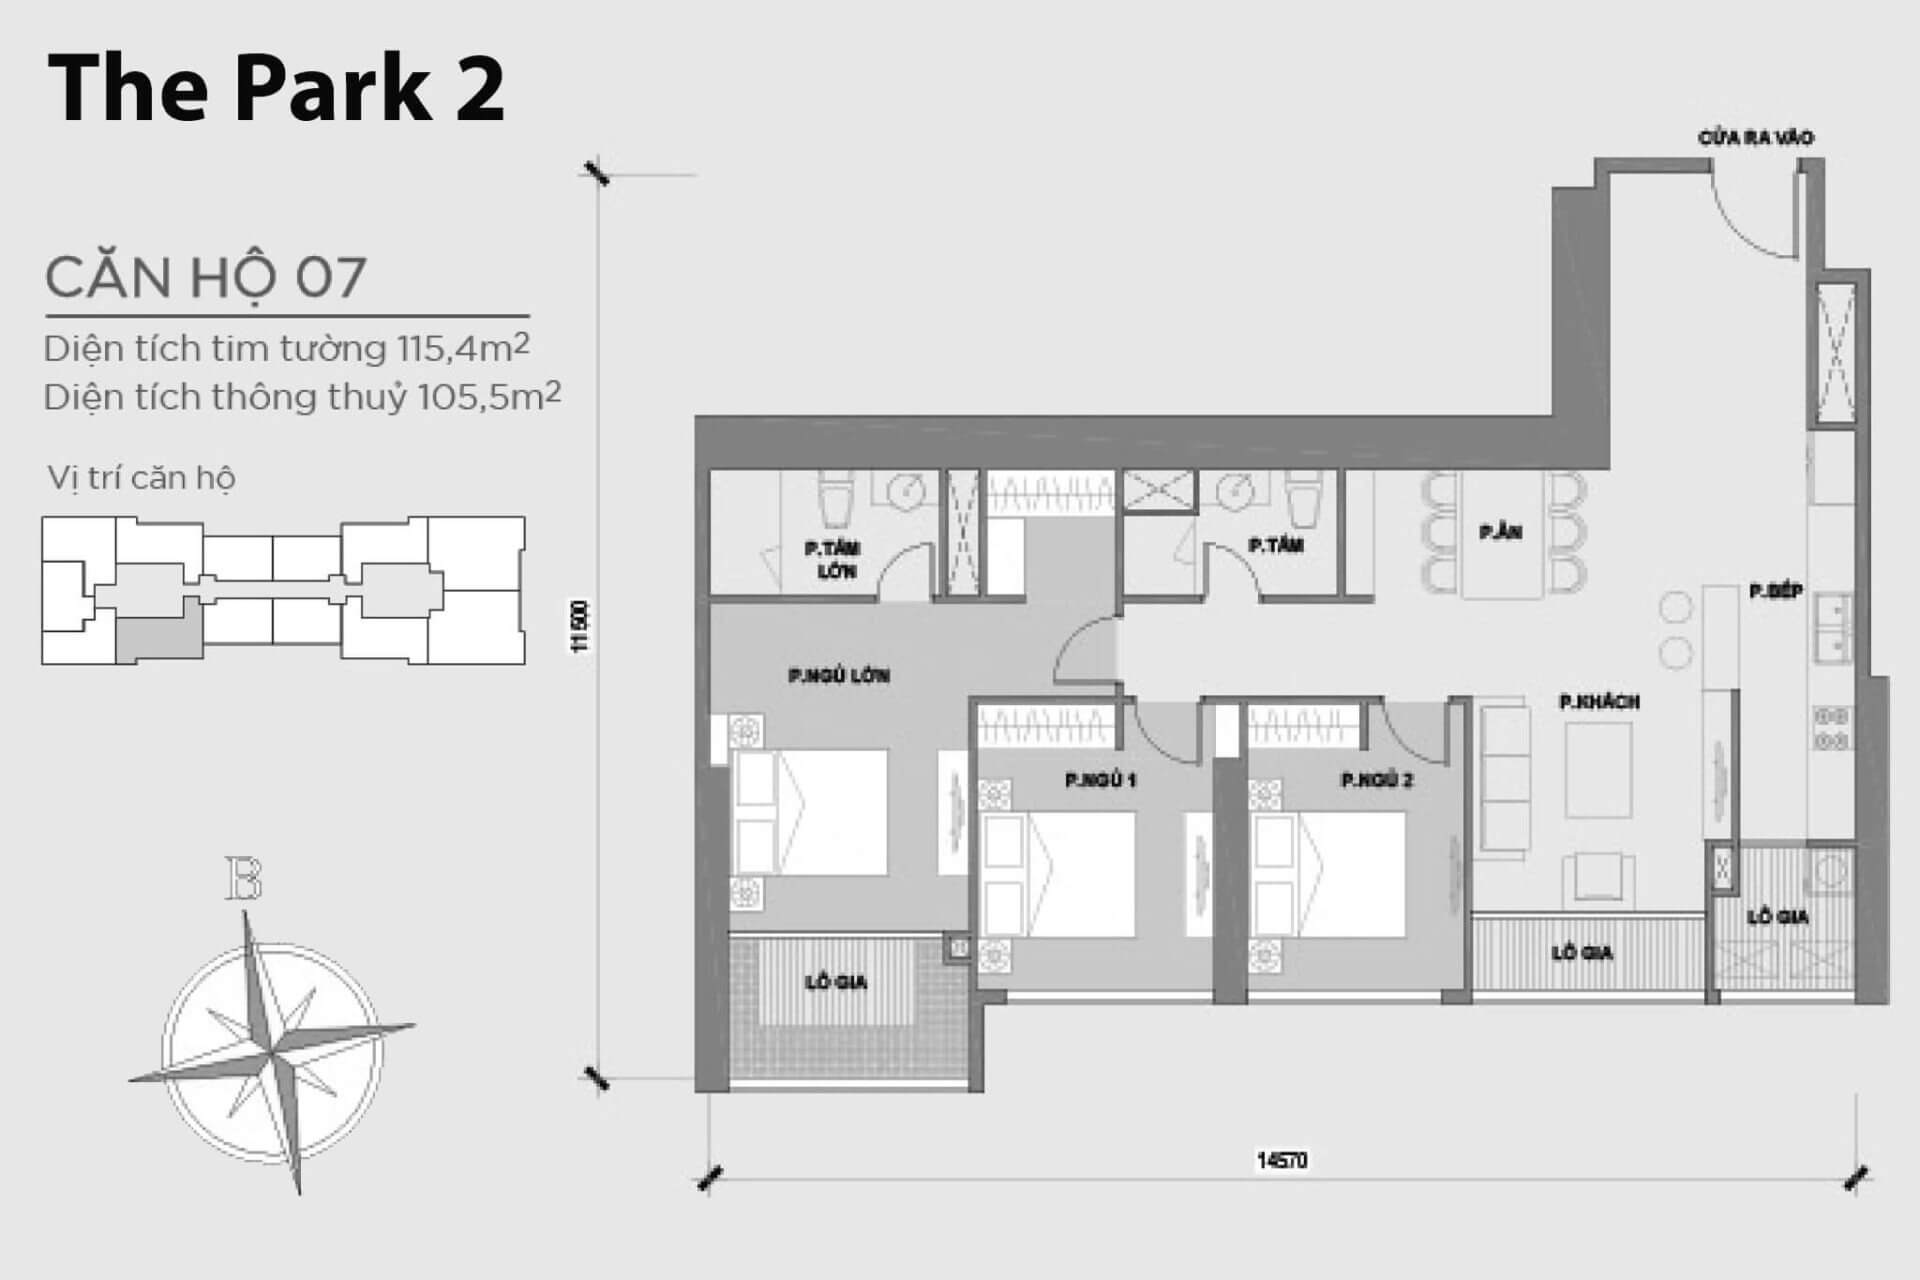 mặt bằng layout căn hộ số 07 Park 2 Vinhomes Central Park